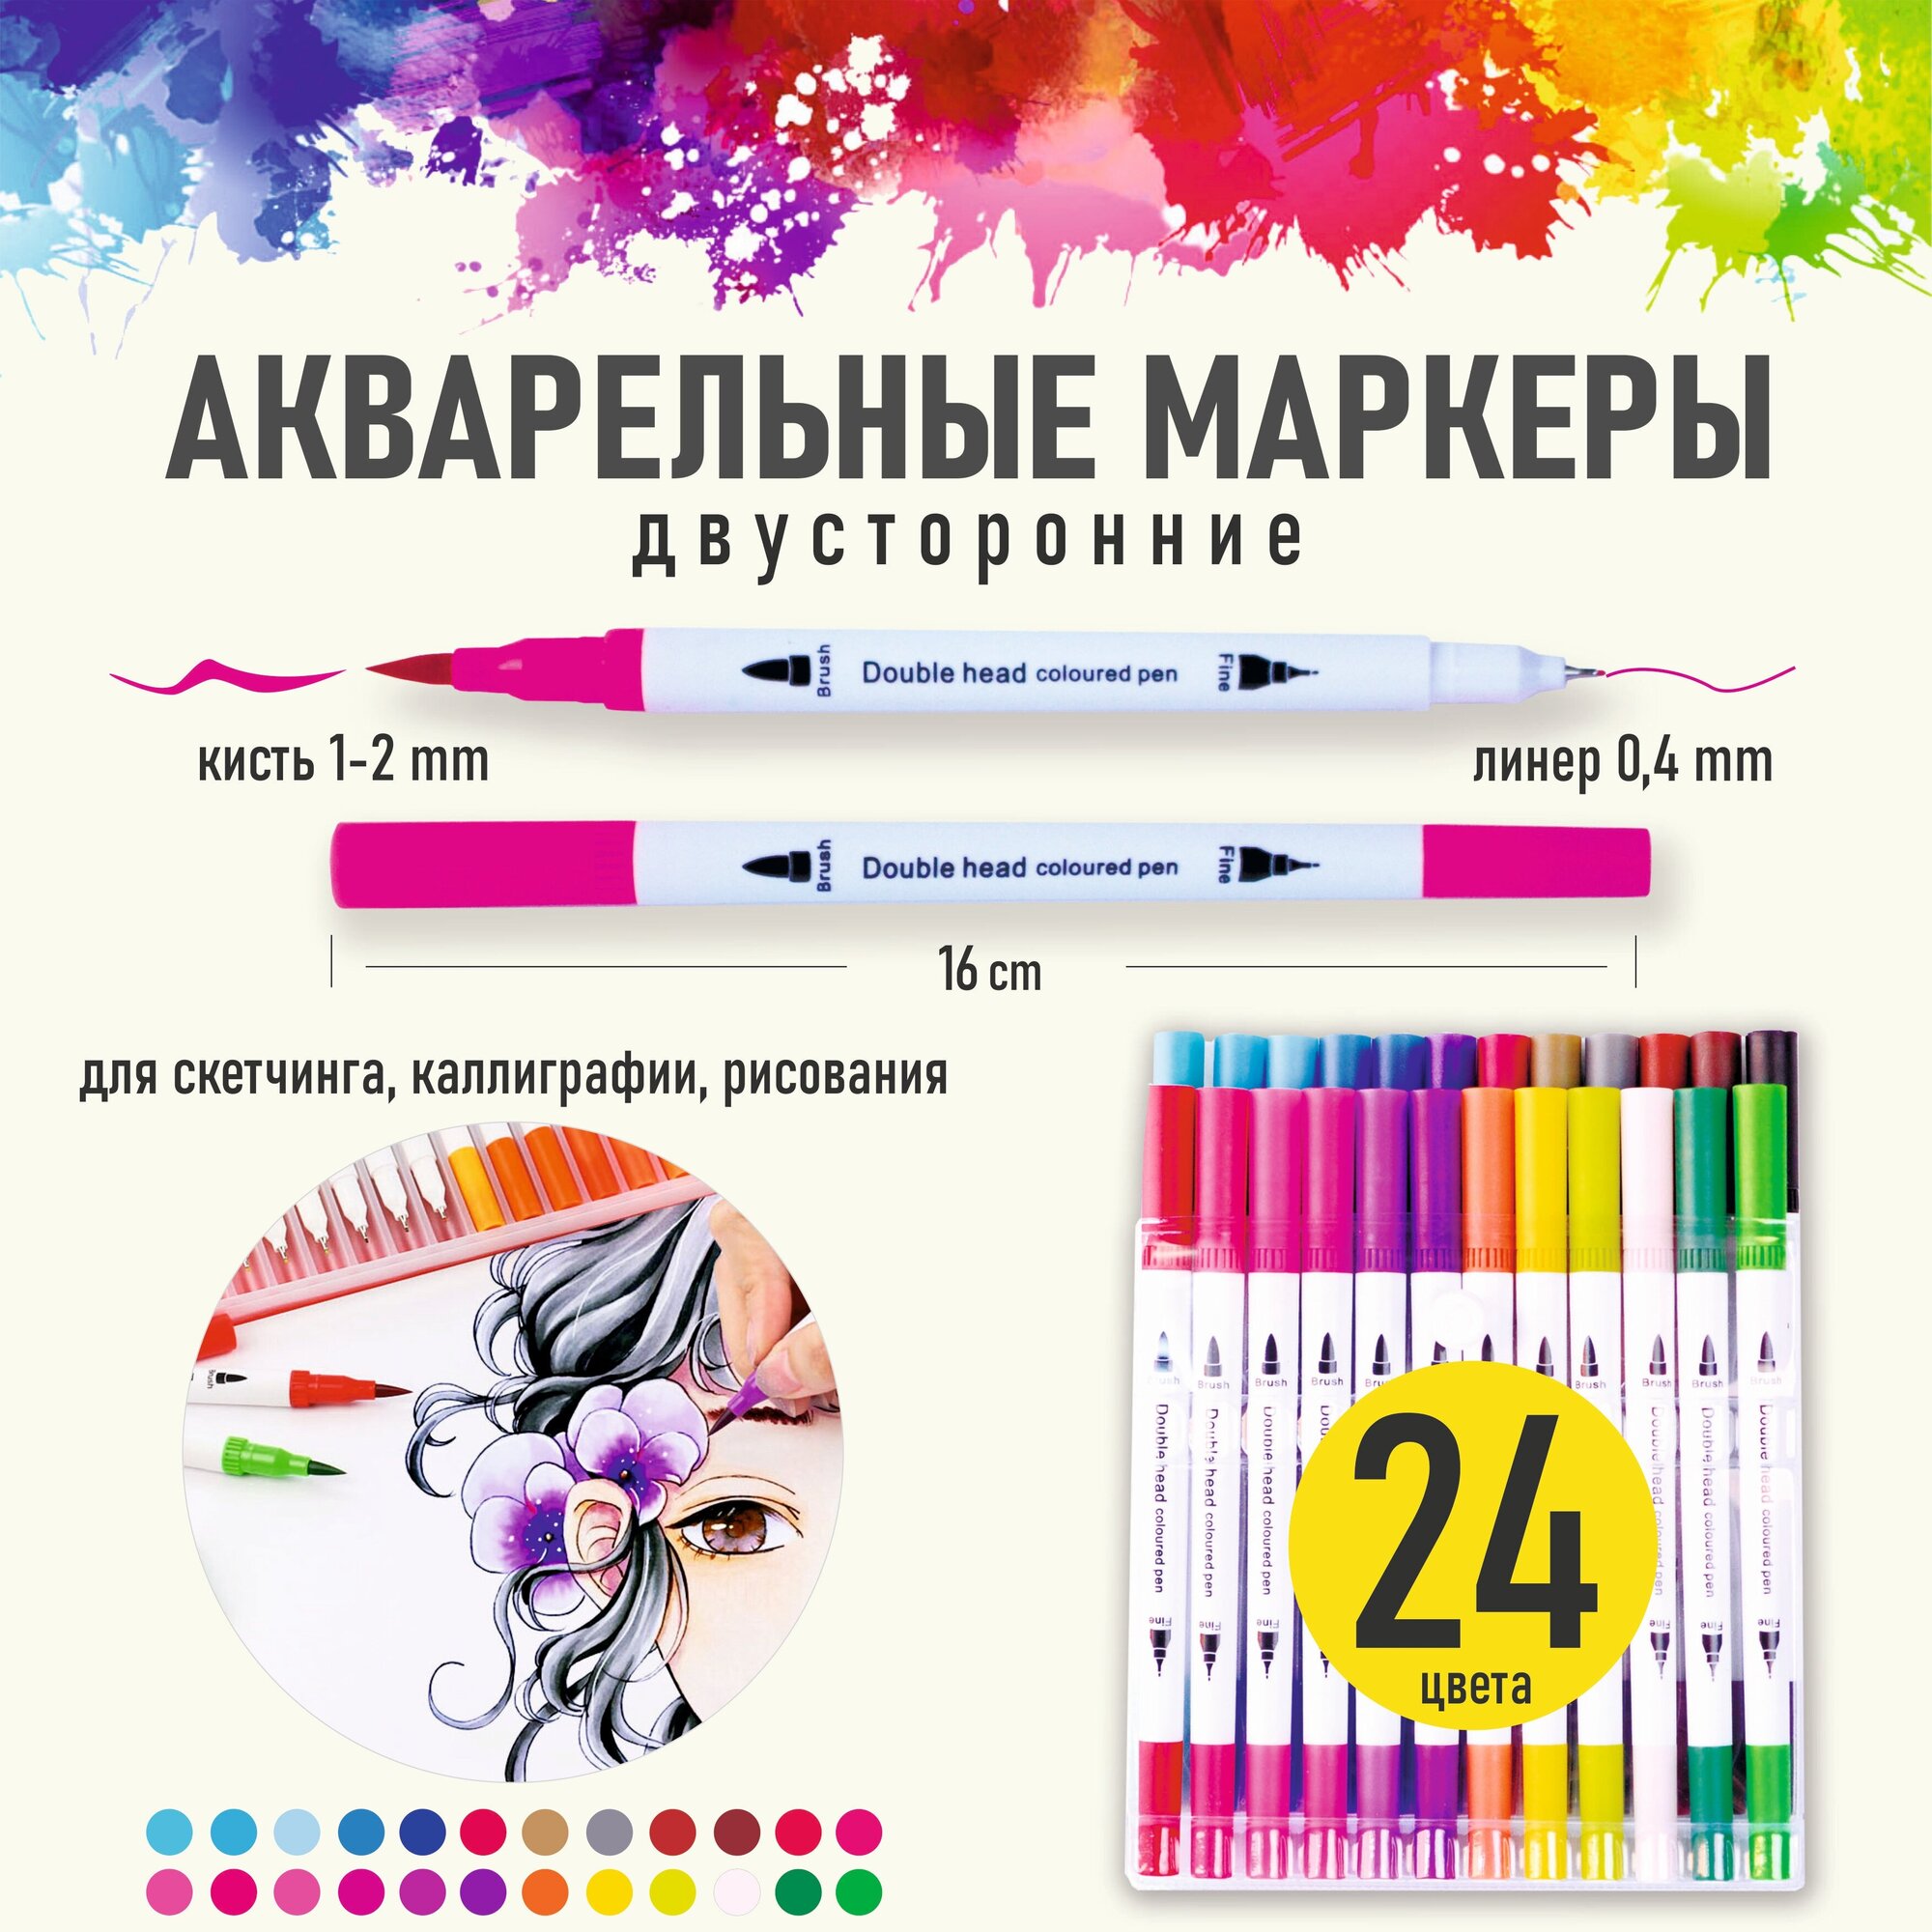 Акварельные двусторонние маркеры для скетчинга и рисования, 24 цвета.